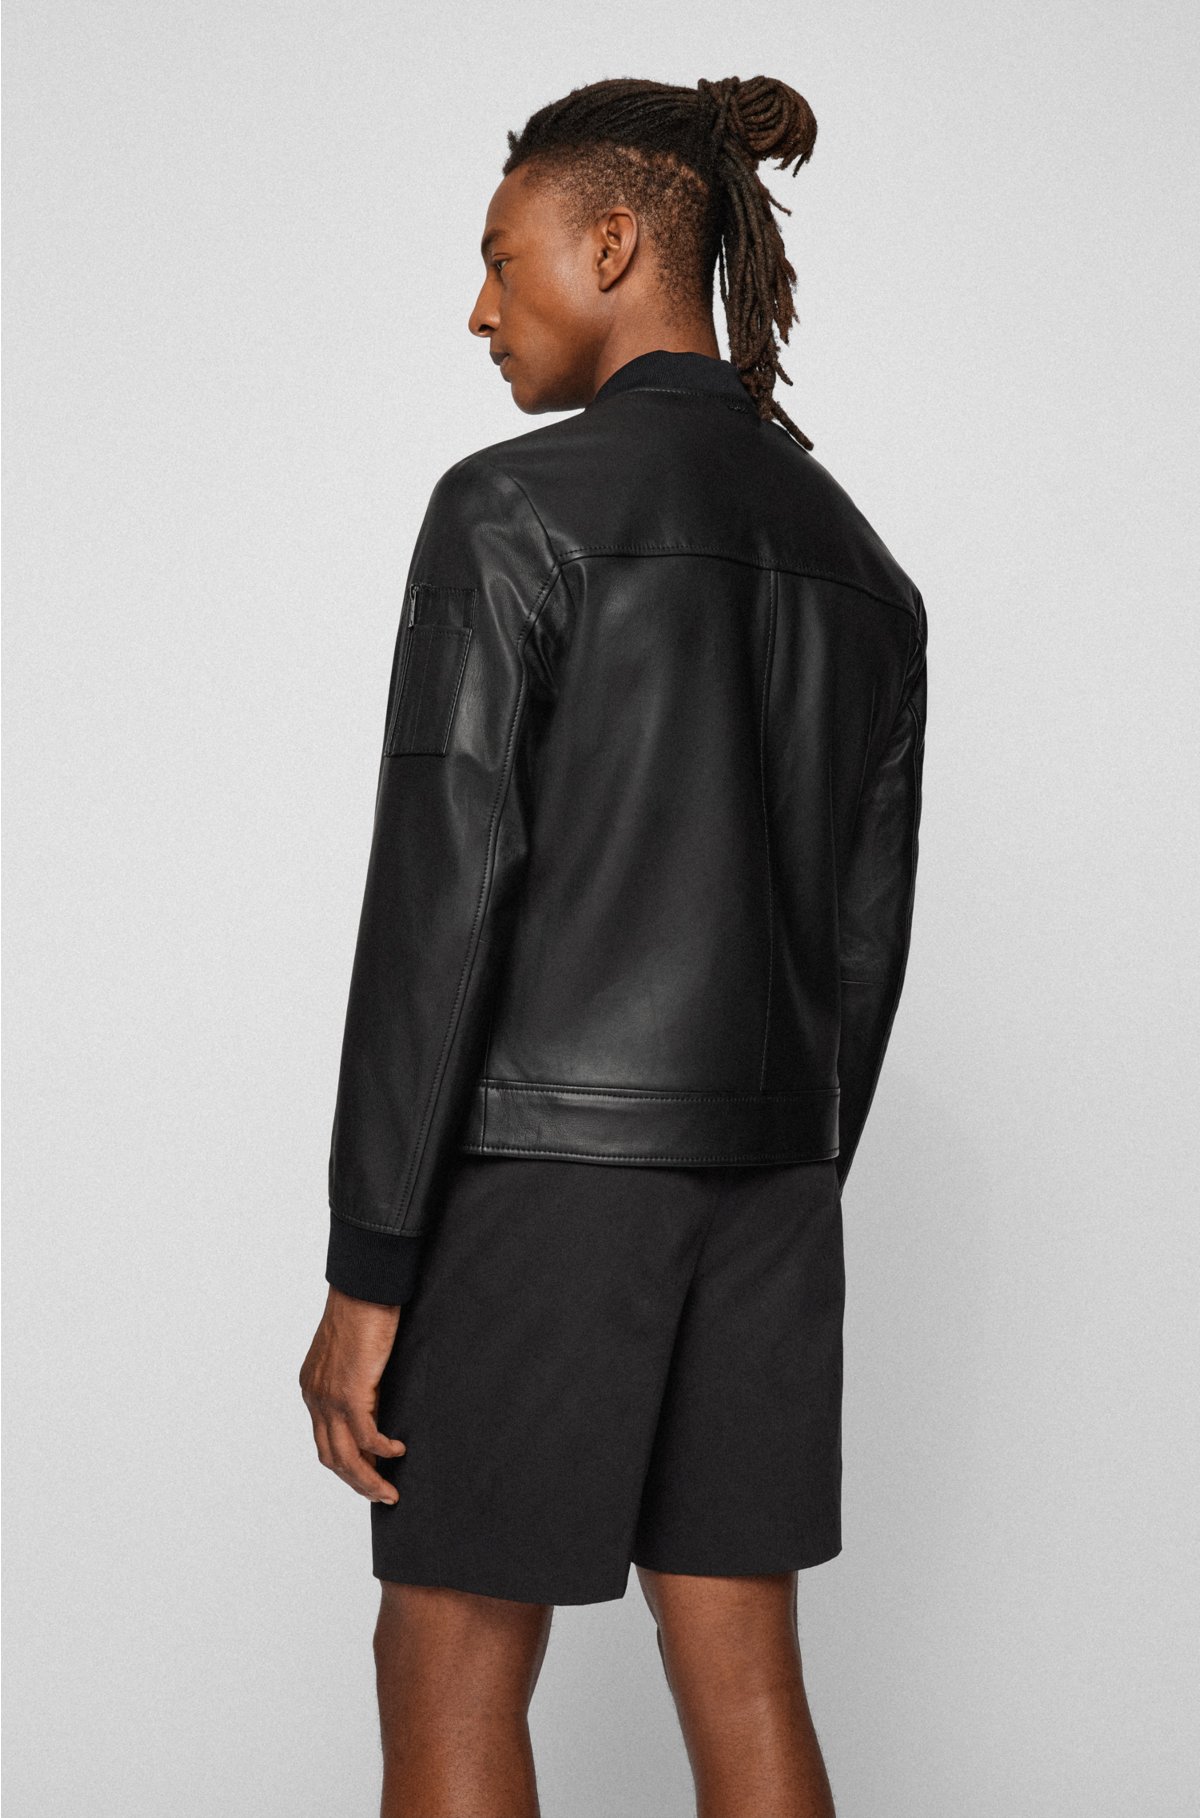 genstand I første omgang End BOSS - Slim-fit leather jacket with ribbed trims